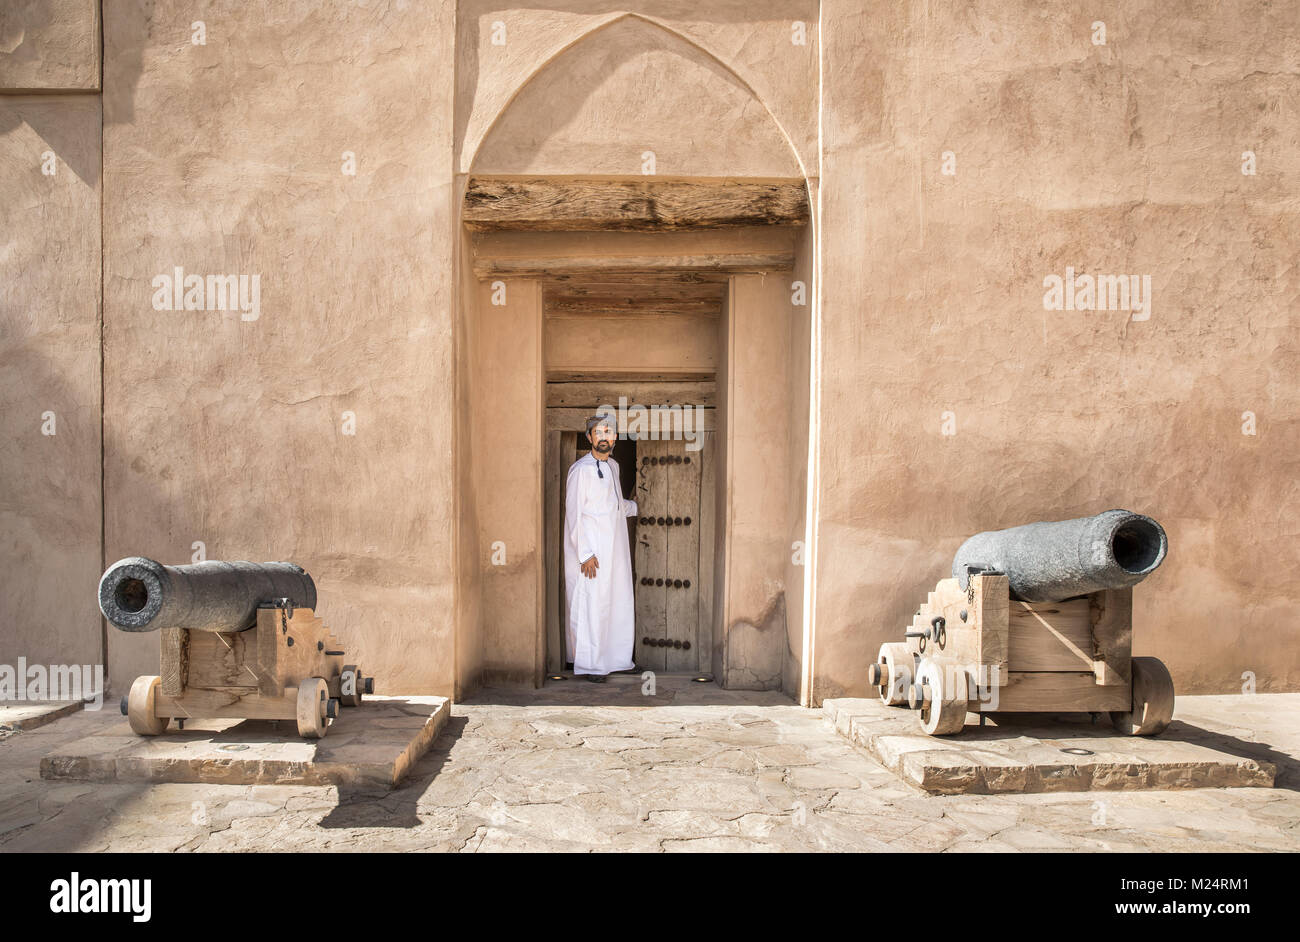 Araber in traditionellen omanischen Outfit in einem alten Schloss Stockfoto